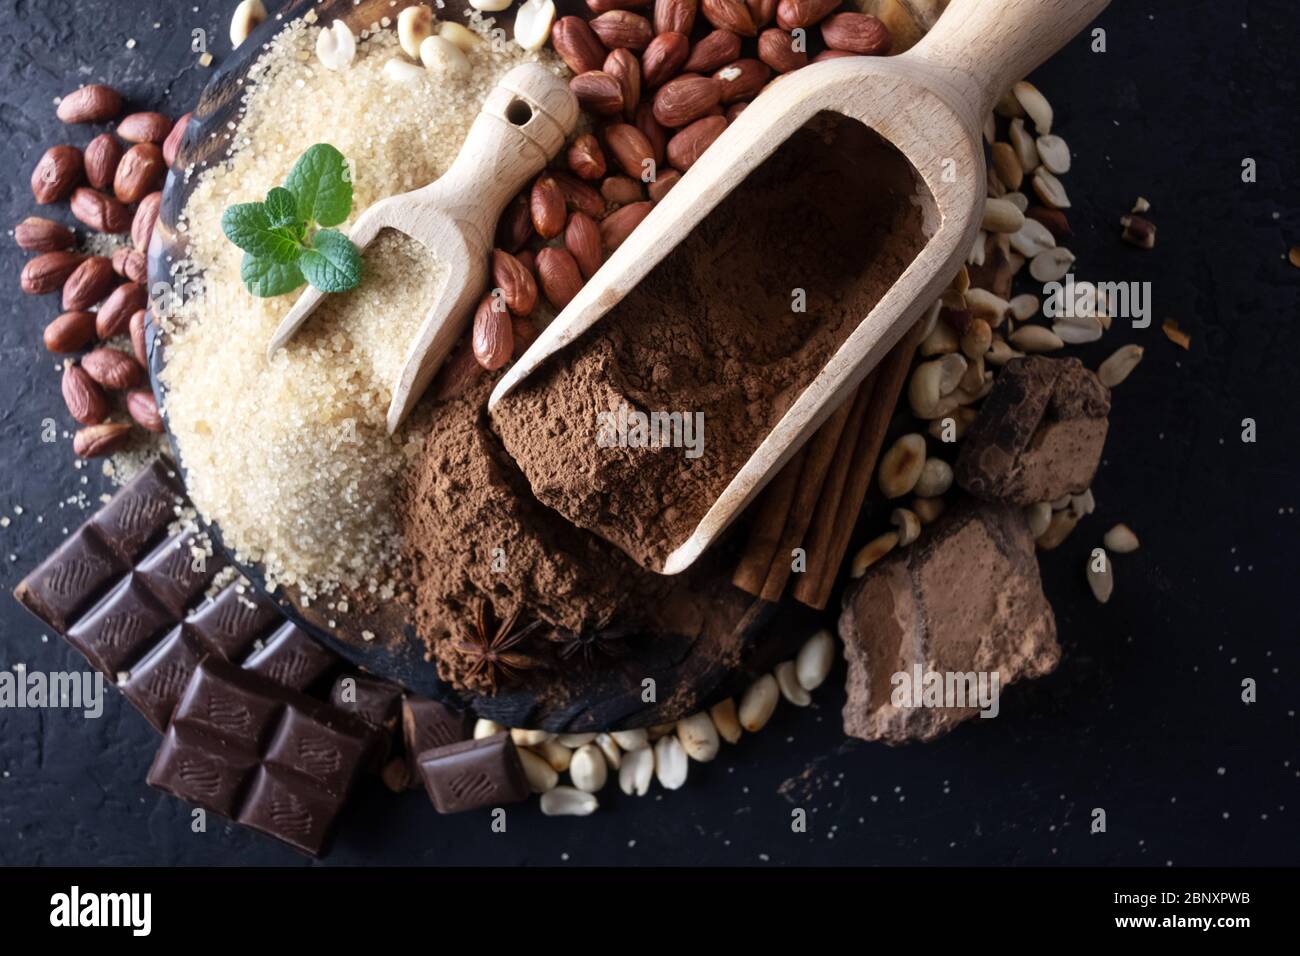 Kakao, Schokolade, Nüsse und Gewürze auf einem Holztisch. Essen Fotografie Stockfoto